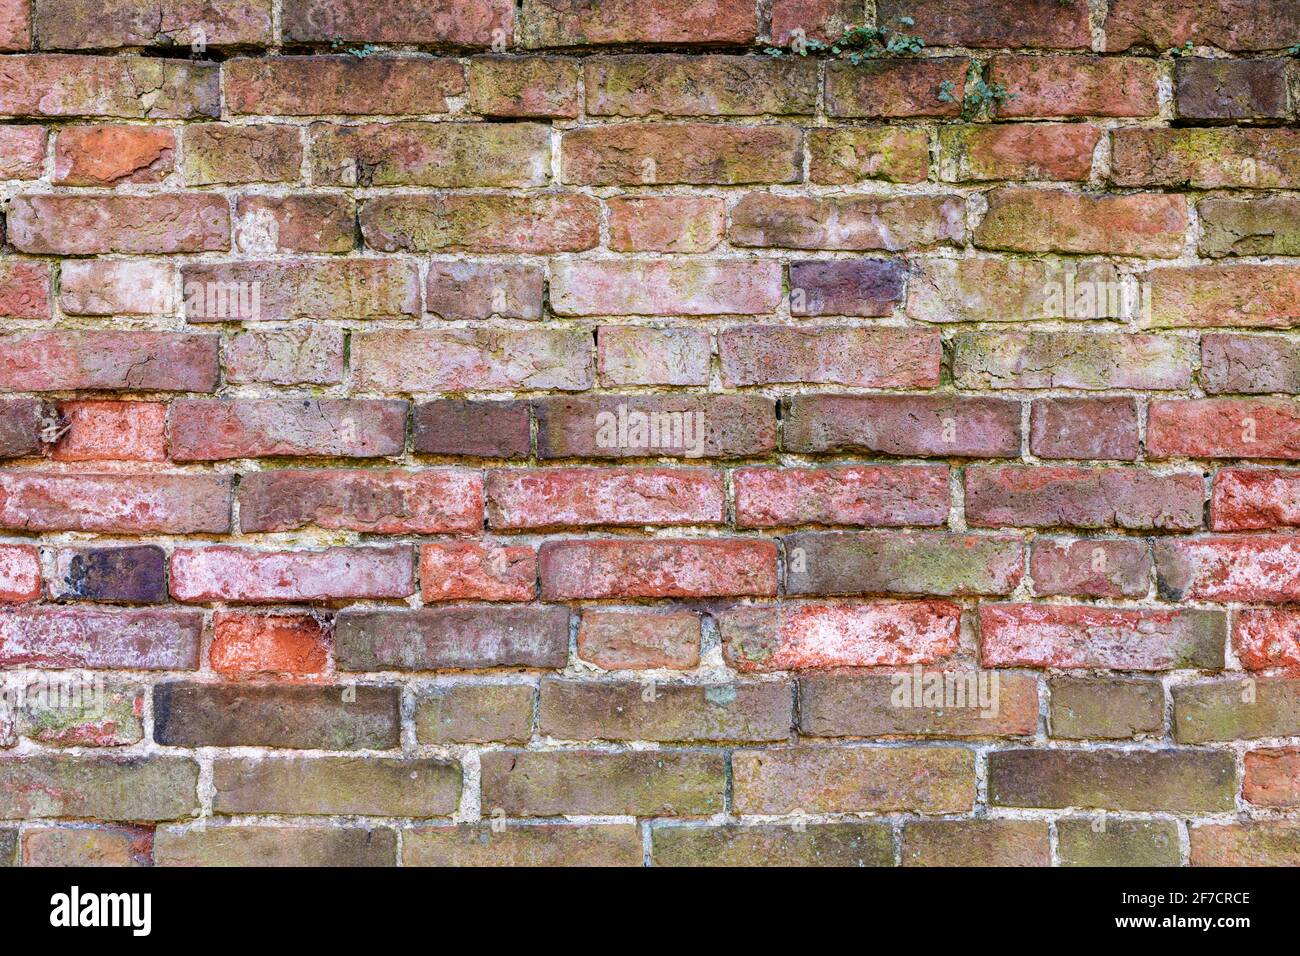 Mehrfarbige Backsteinwand Hintergrund Vielzahl von Ziegeln Backsteinwand gemacht Mit alten wiedergewonnenen Steinen Foto in hoher Auflösung und hoher Qualität Stockfoto